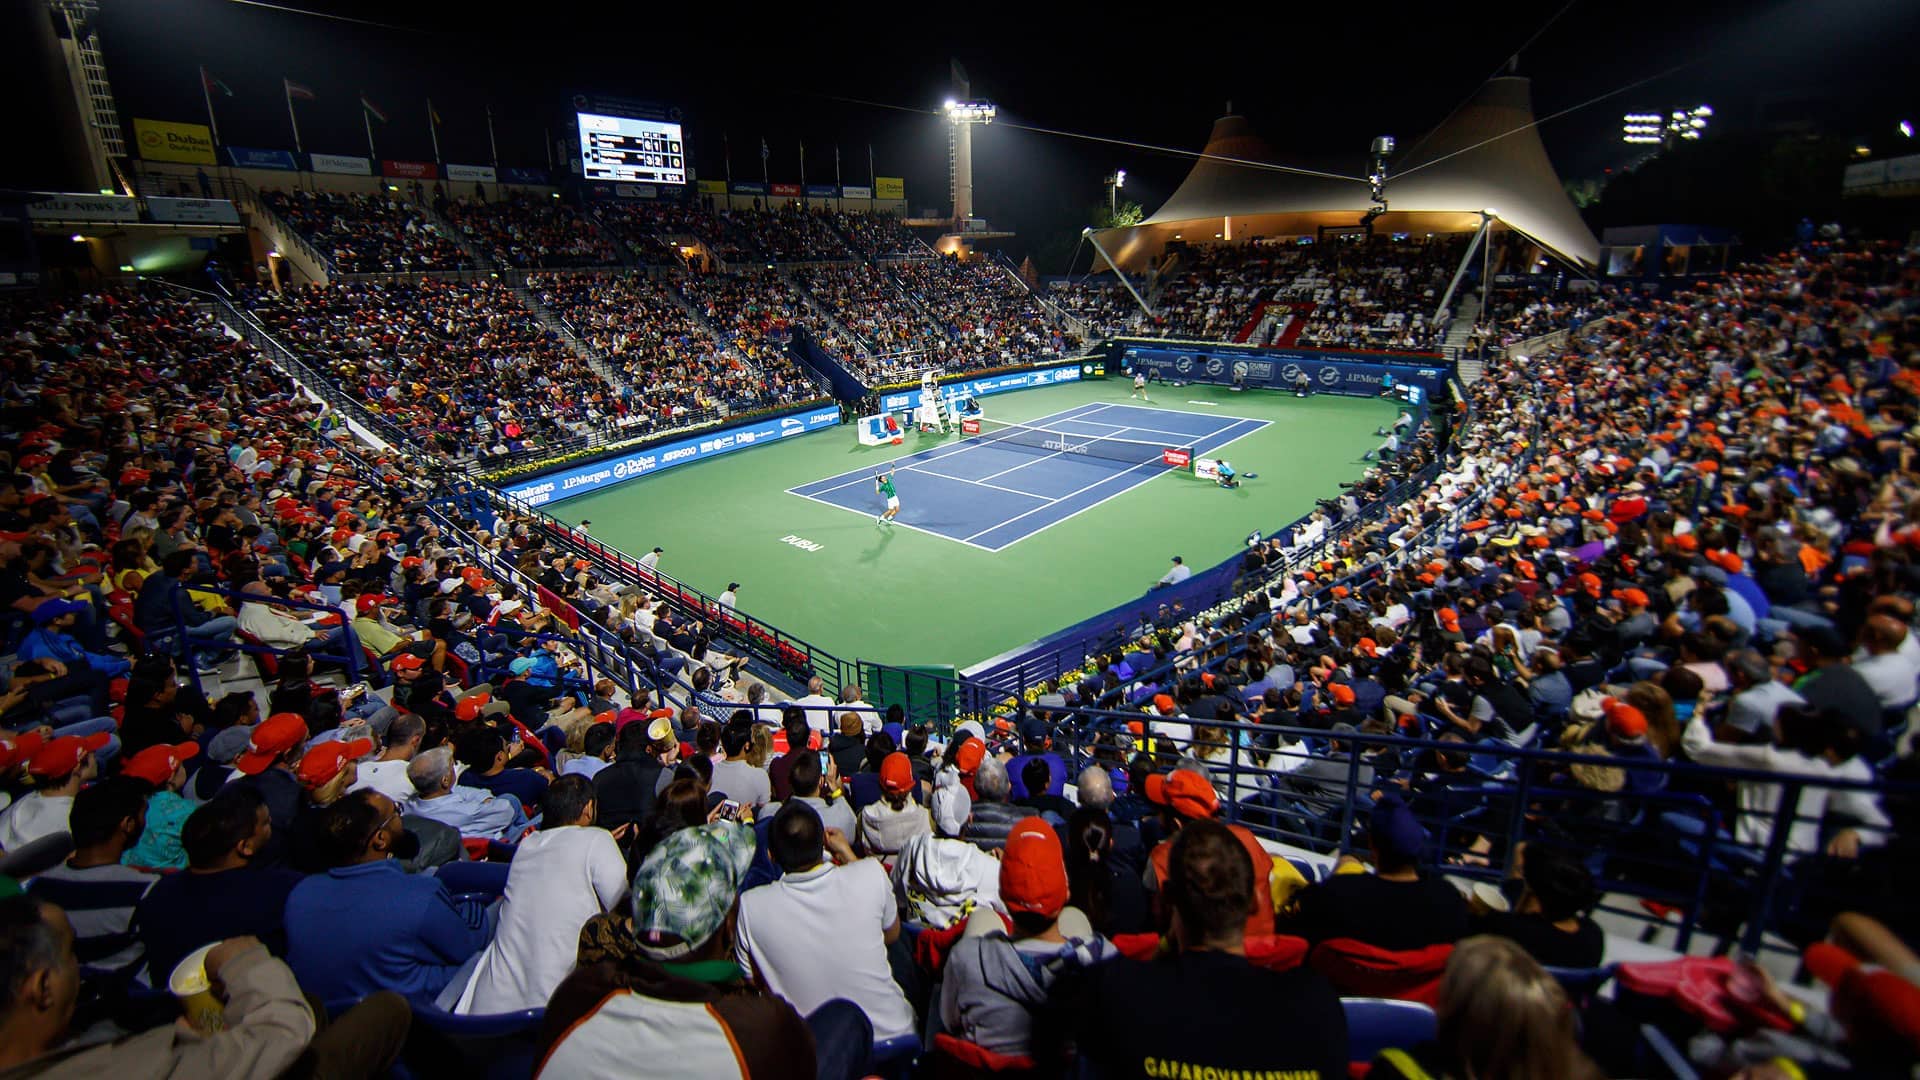 Dubai, Overview, ATP Tour